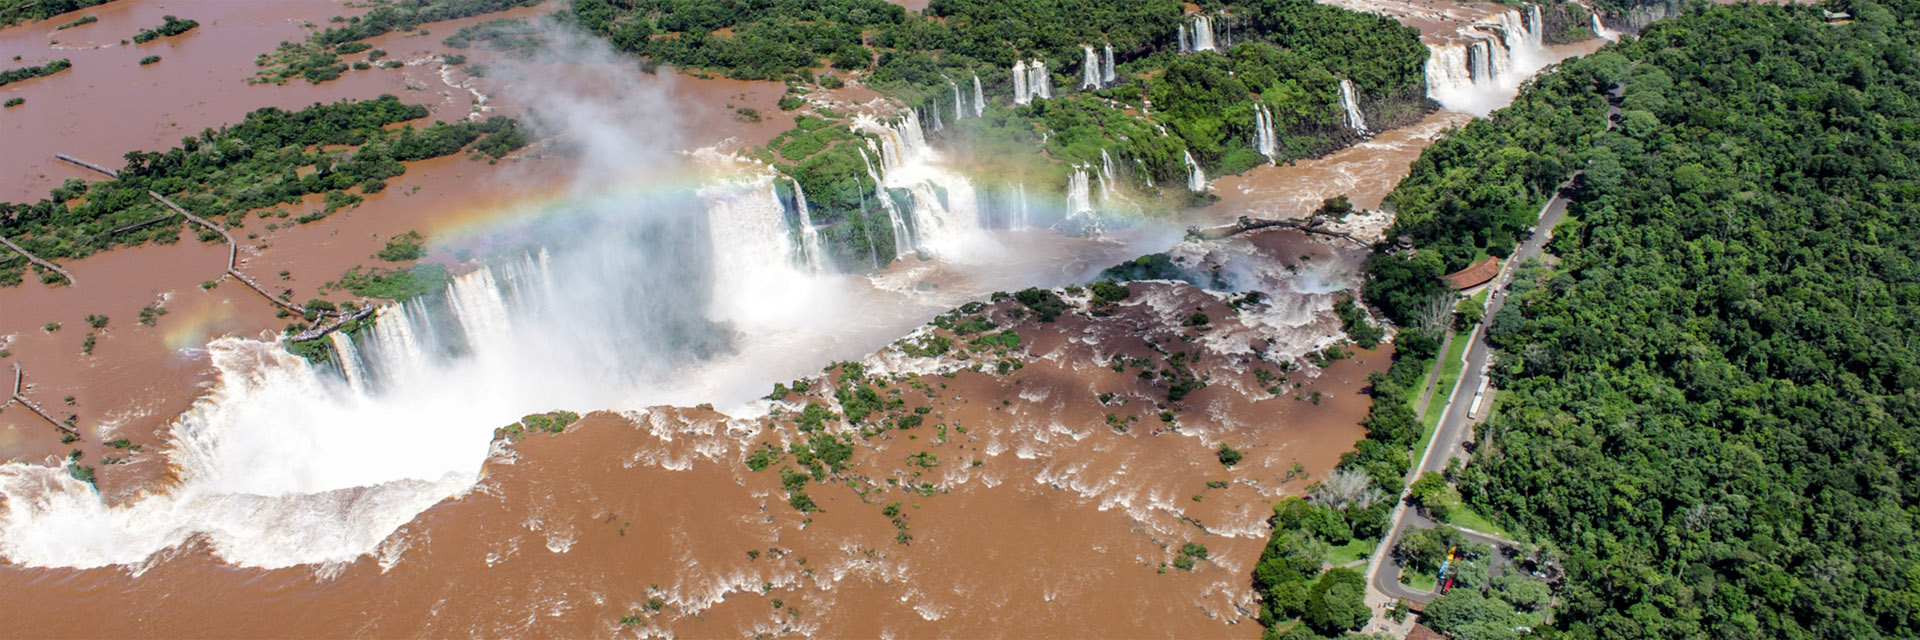 Quantos dias em Foz do Iguaçu?